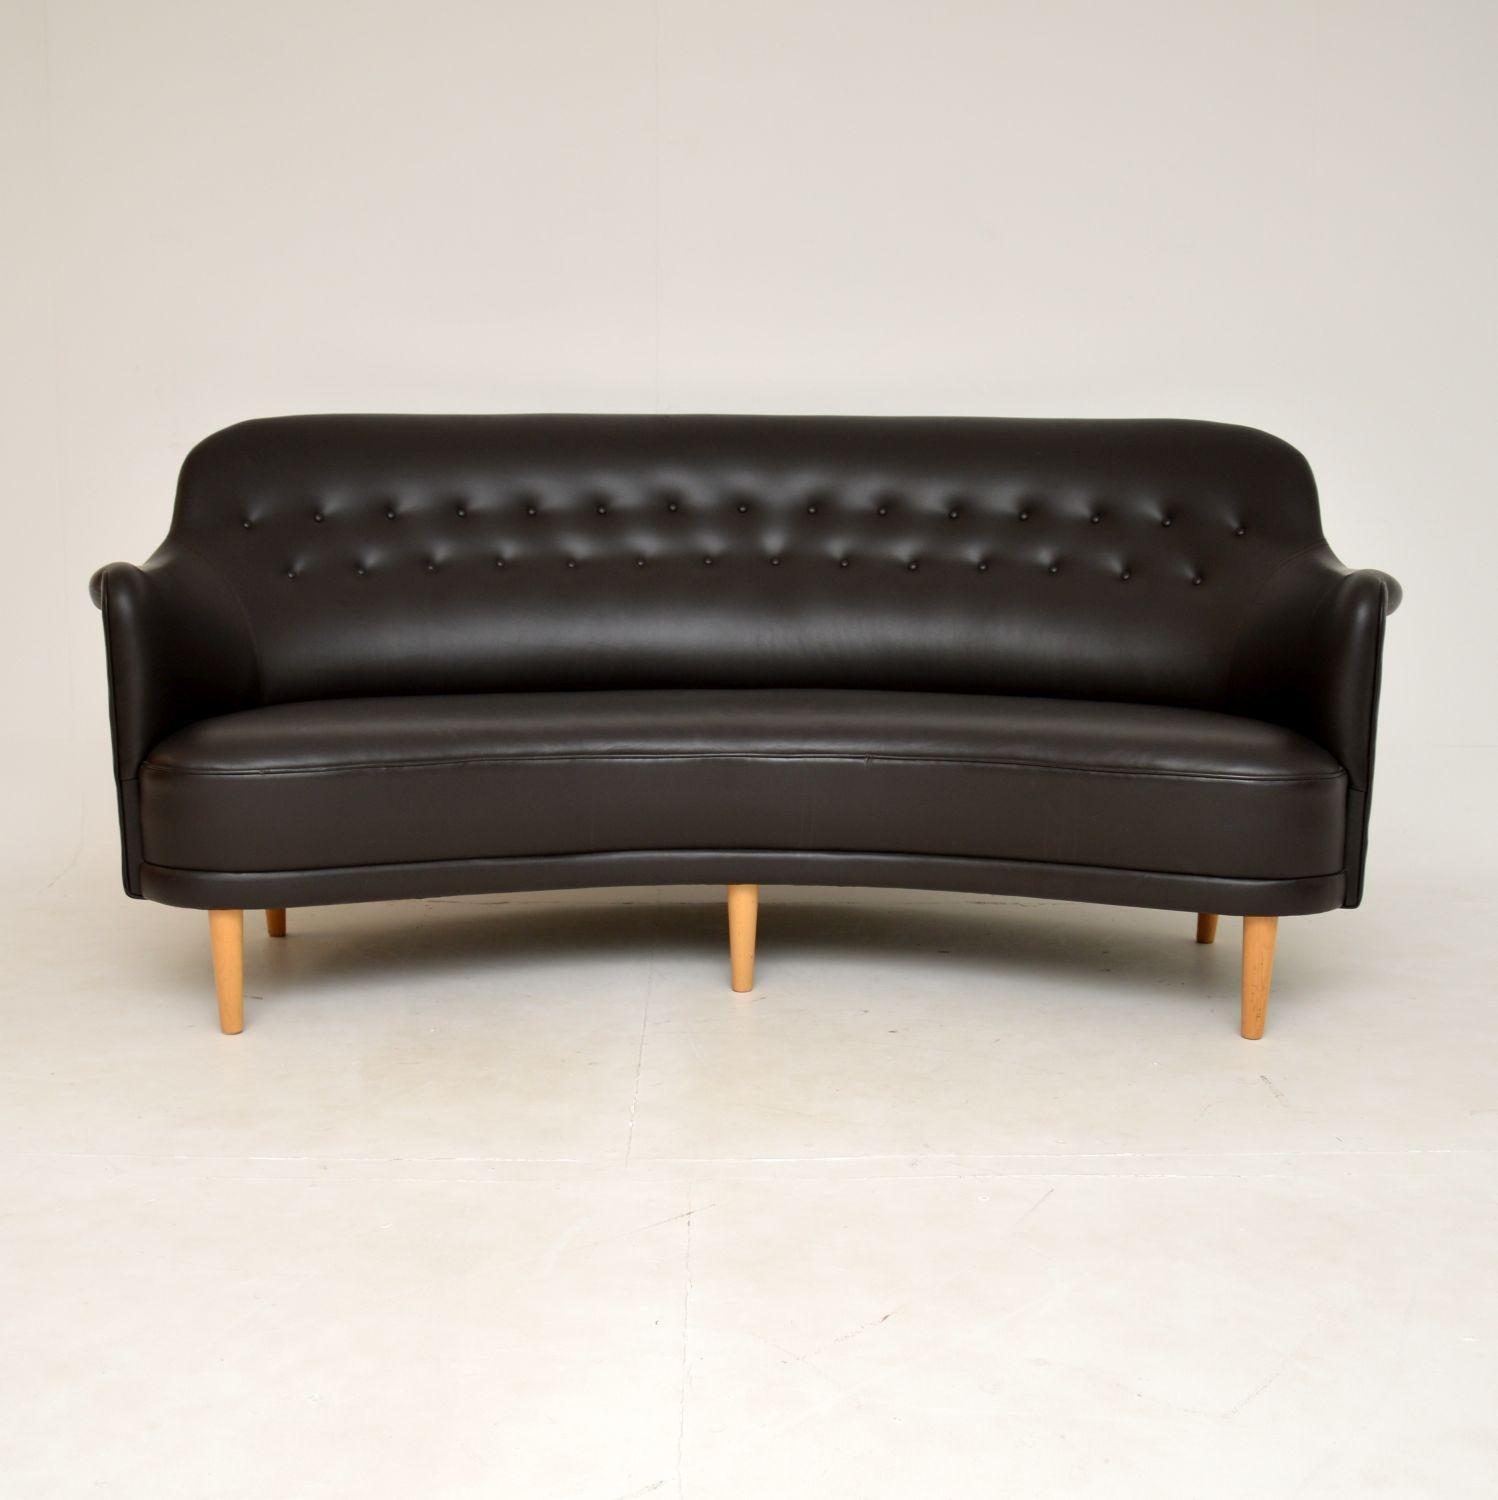 Ein absolut atemberaubendes und ikonisches Design, das ist das runde Sofa Samsas. Es wurde von Carl Malmsten in den 1920er Jahren entworfen. Dieses Modell wurde im späten 20. Jahrhundert in Schweden von Sjogren hergestellt.

Er ist vollständig mit